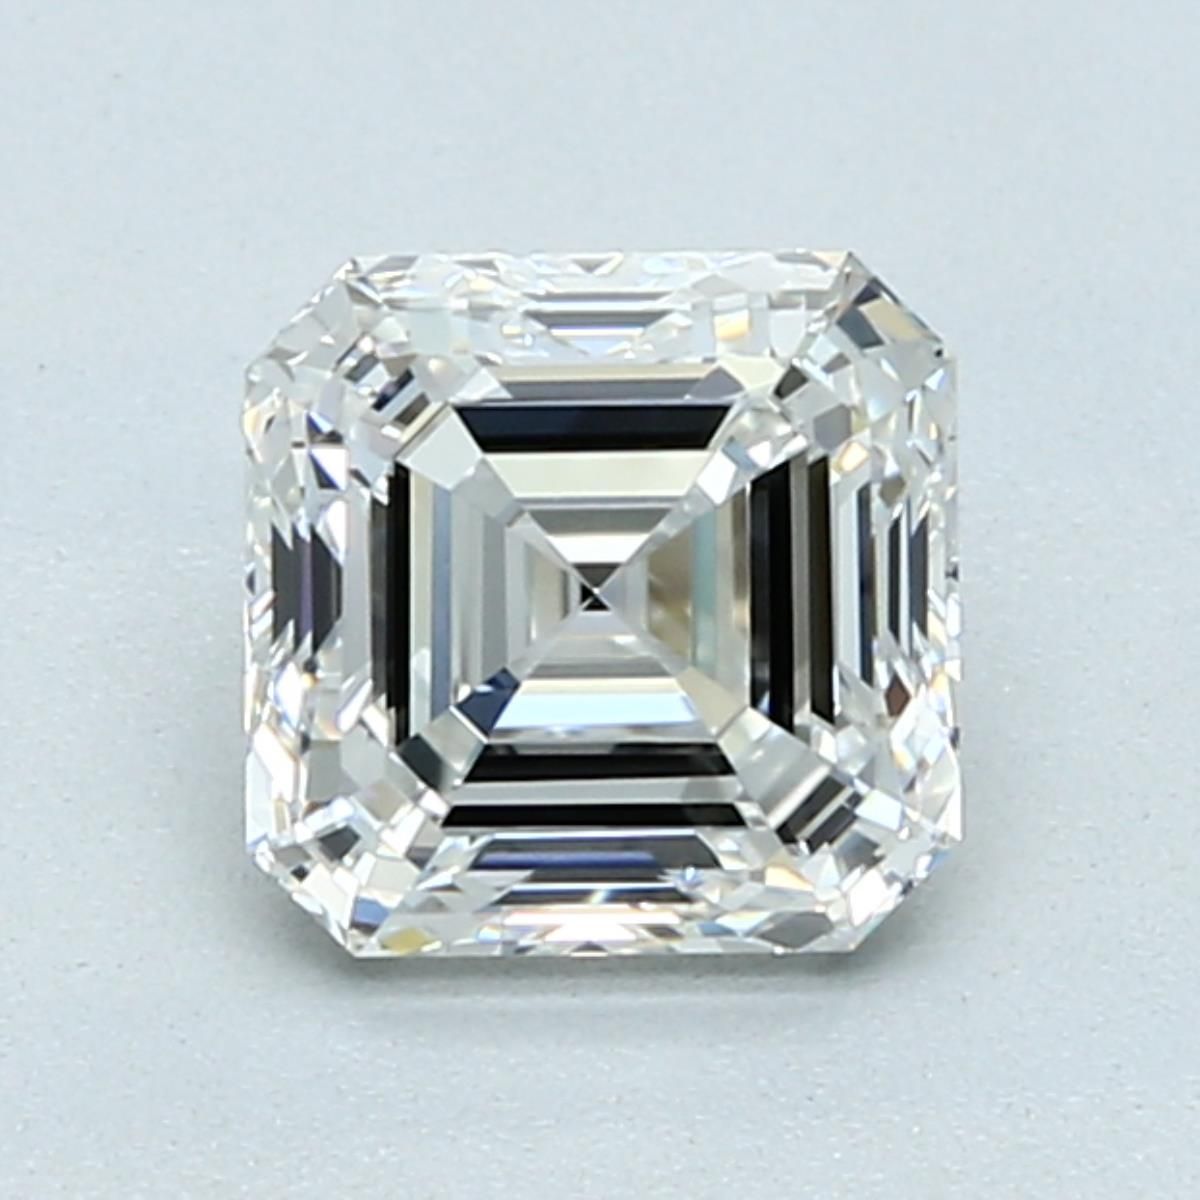 1.30 Carat Asscher Loose Diamond, G, VVS1, Super Ideal, GIA Certified